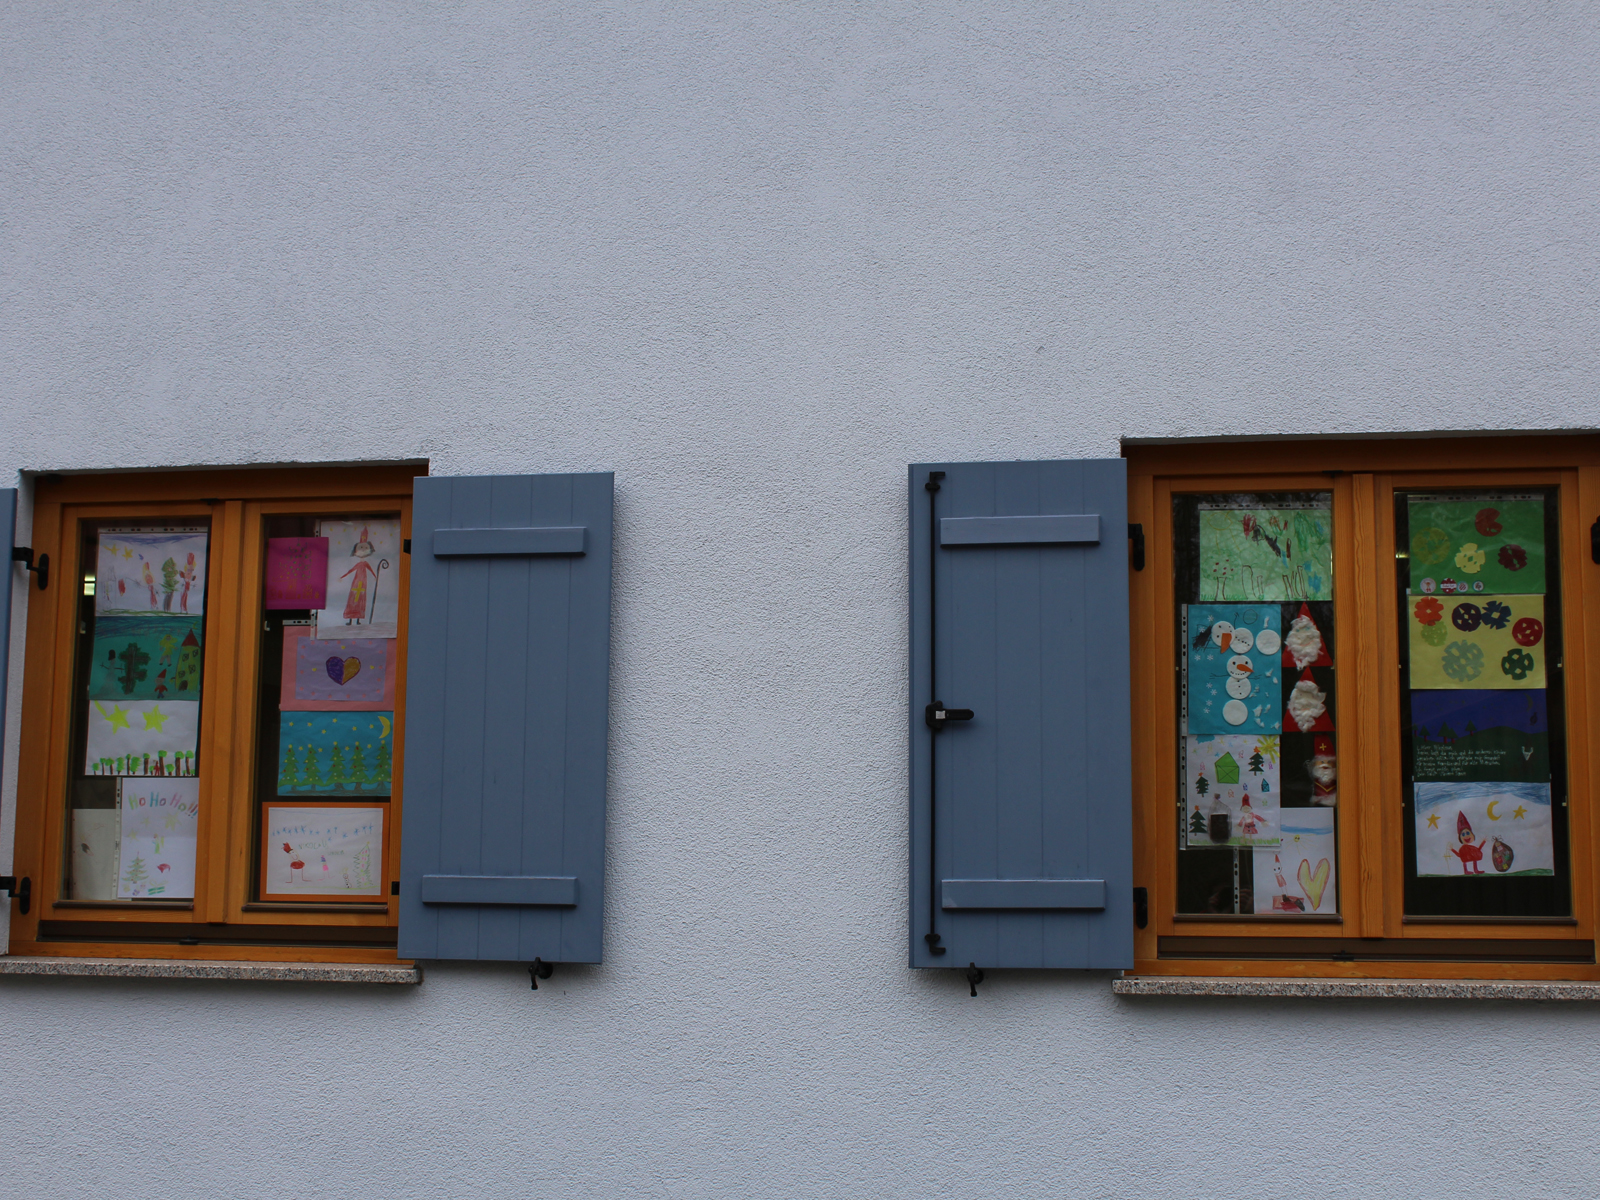  Nikolausbilder zieren die Fenster am Heimatmuseum. 